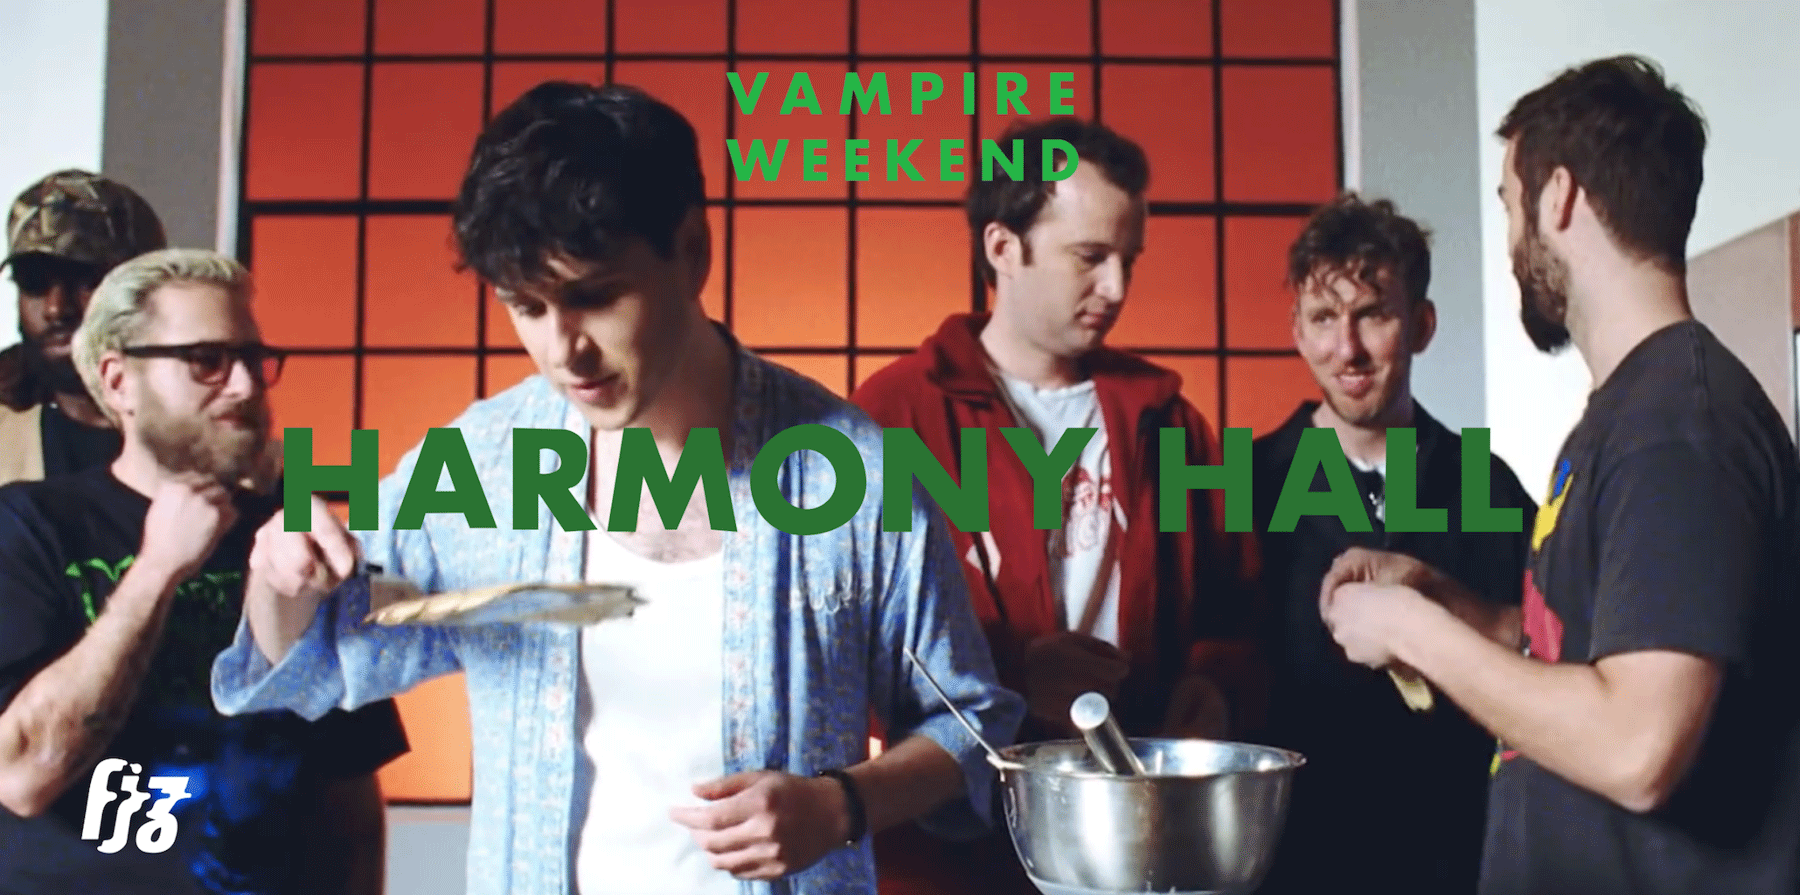 ทำแพนเค้กไปกับน้องงูเขียวใน MV เพลง Harmony Hall จาก Vampire Weekend